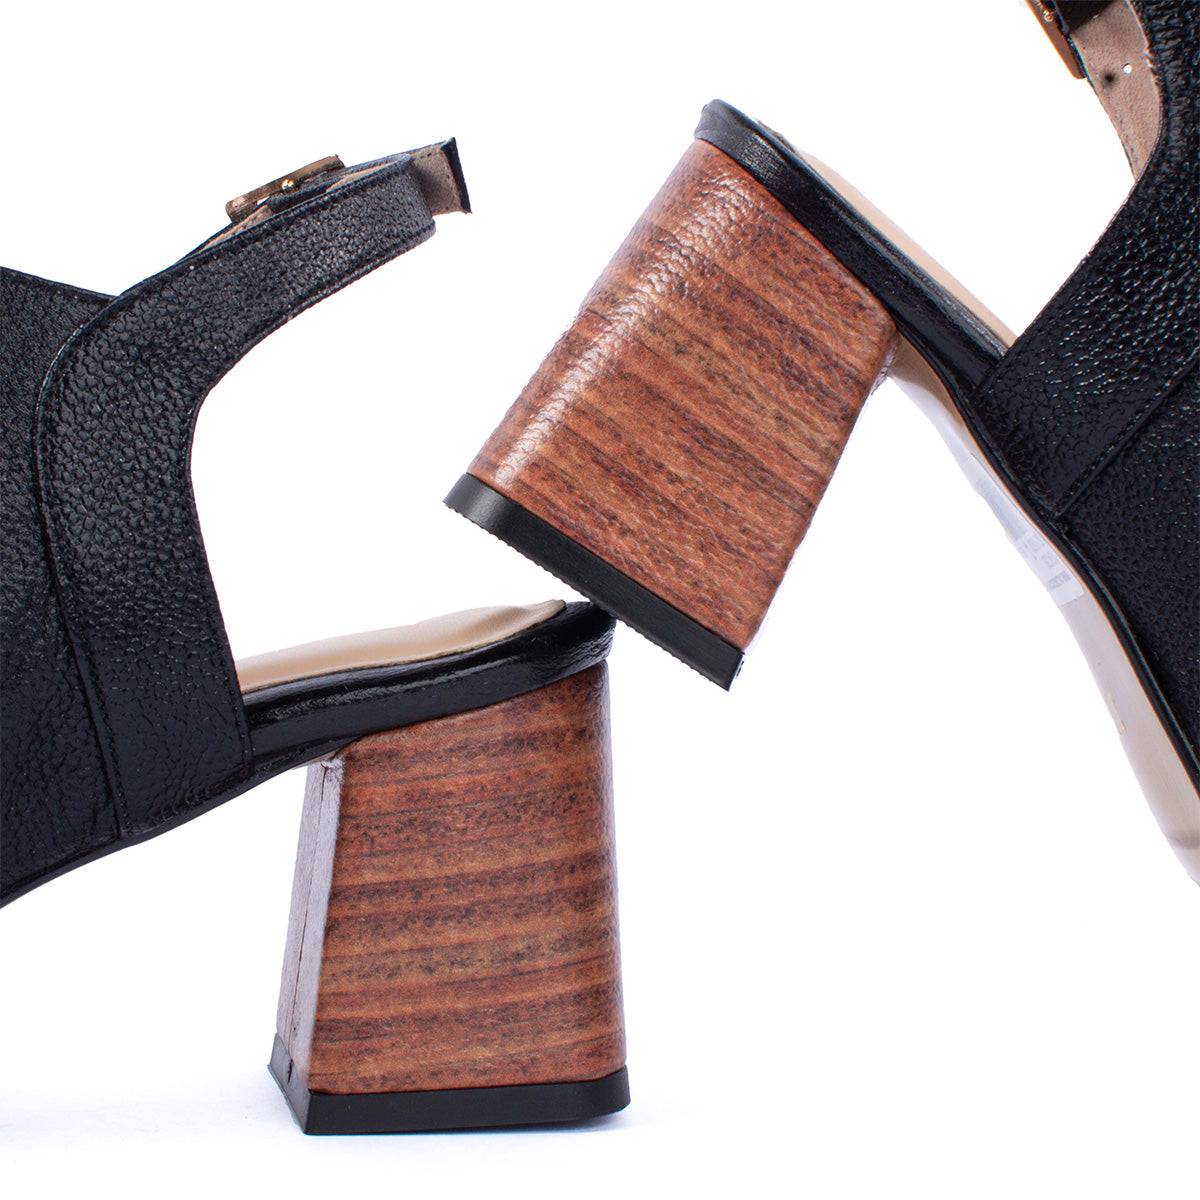 Sandalias altas en cuero color negro con perforaciones